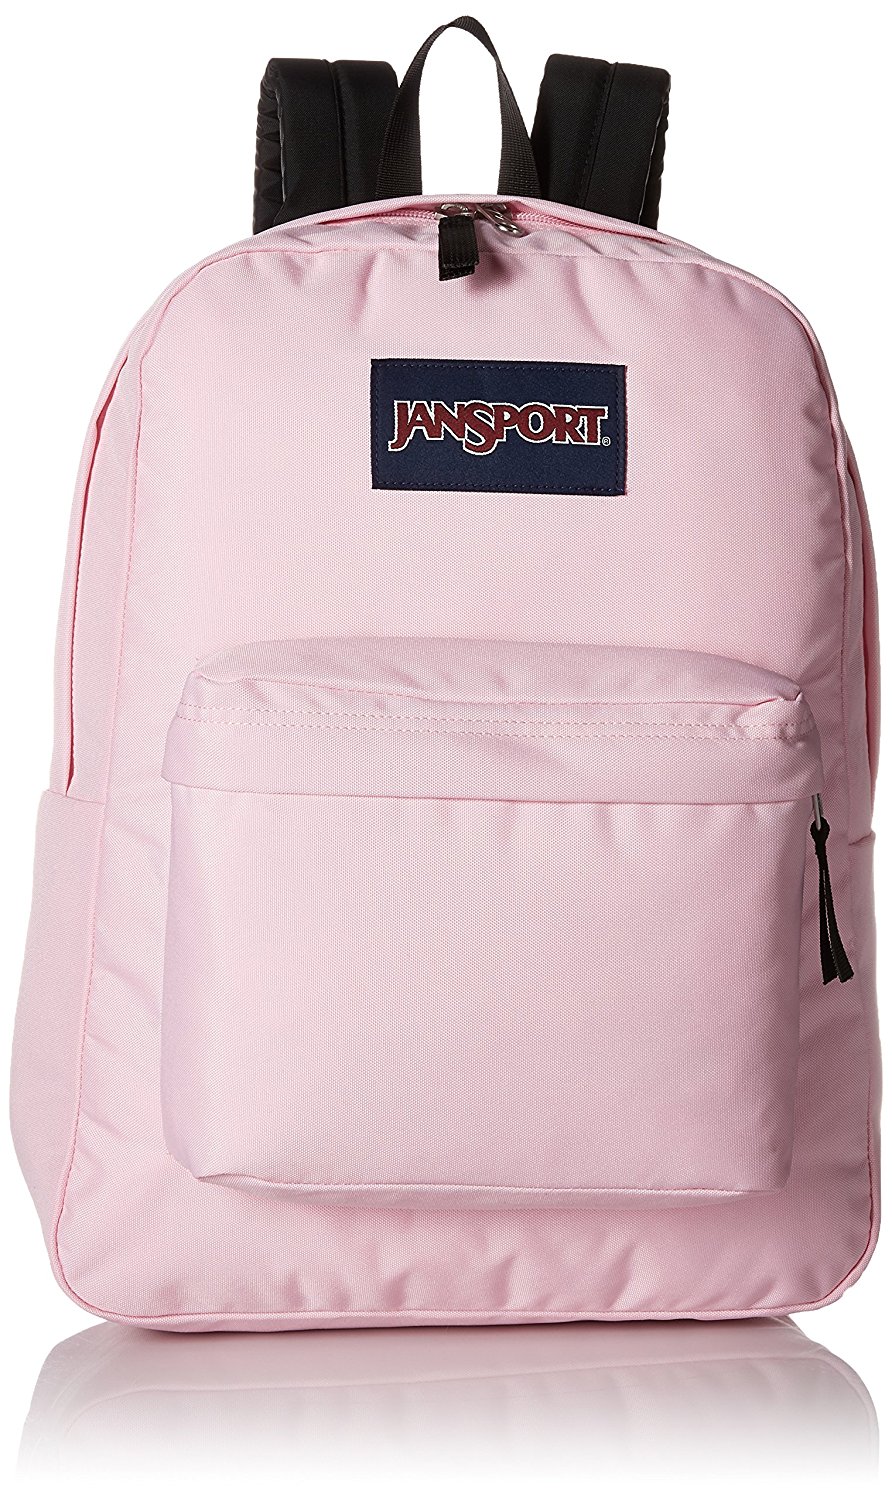 JanSport SuperBreak Backpack - Pink Mist - JS00T5013B7 | eBay